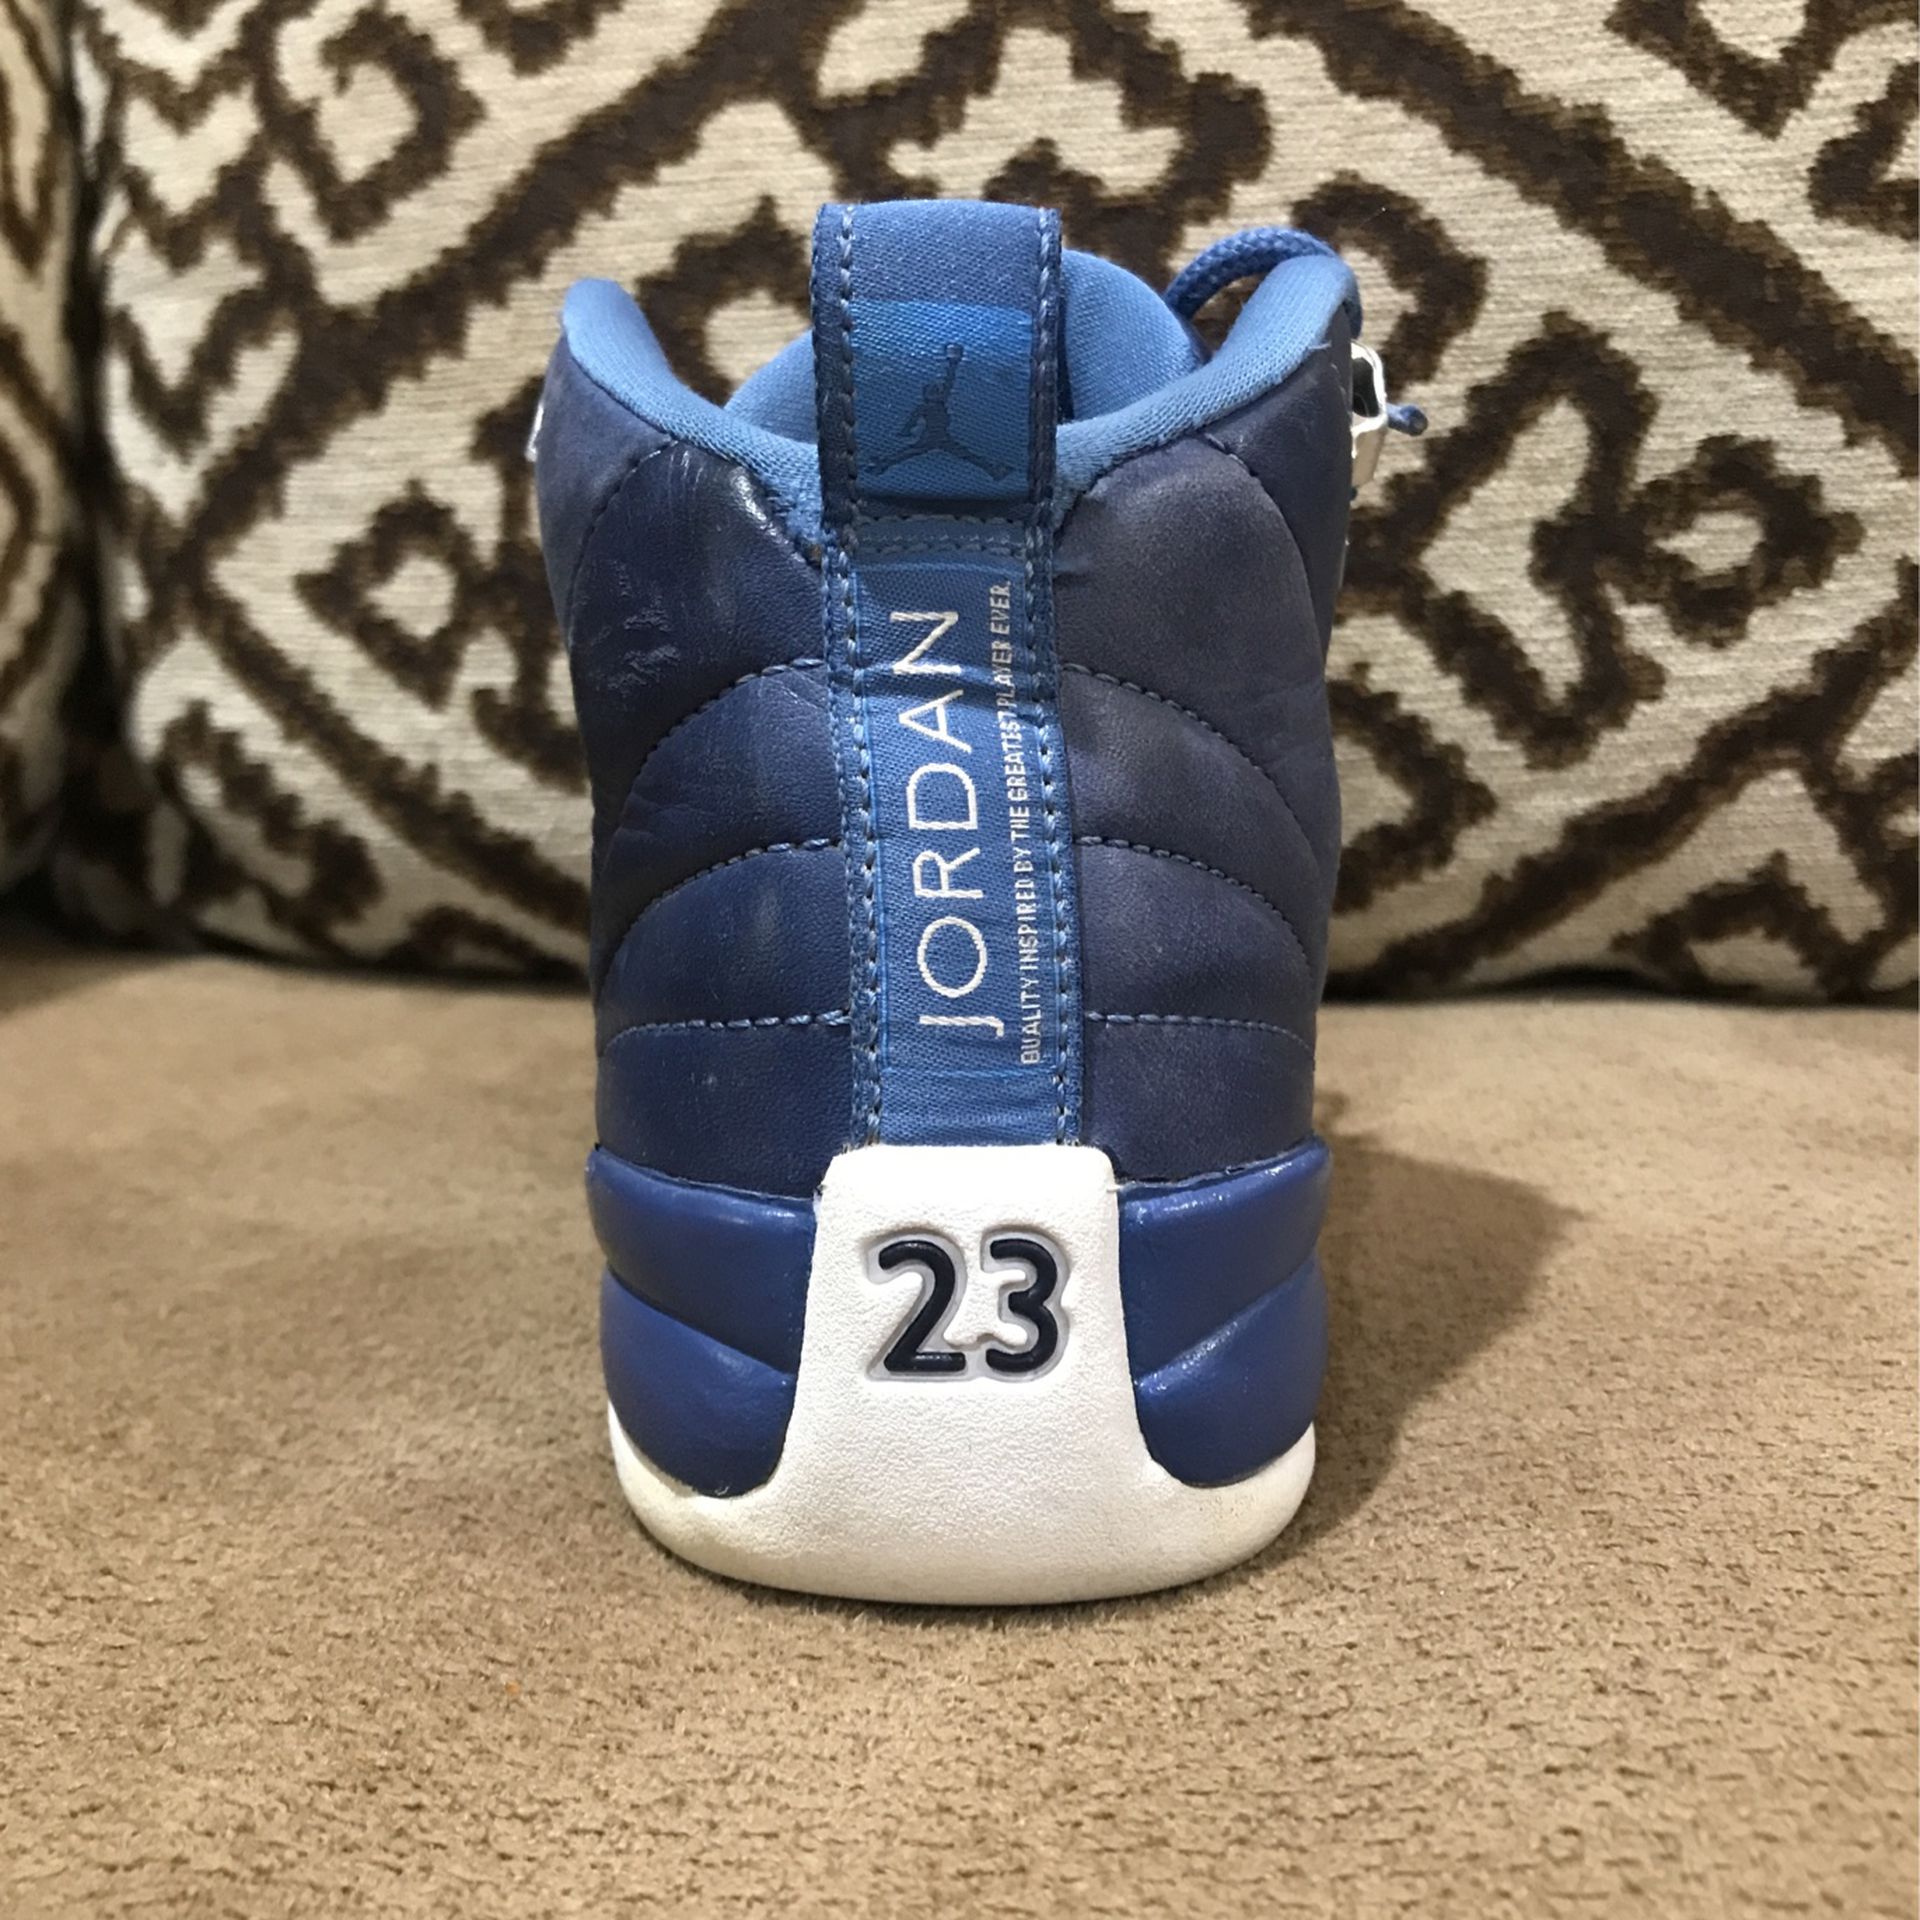 Custom Bape Jordan 12s for Sale in Rosenberg, TX - OfferUp